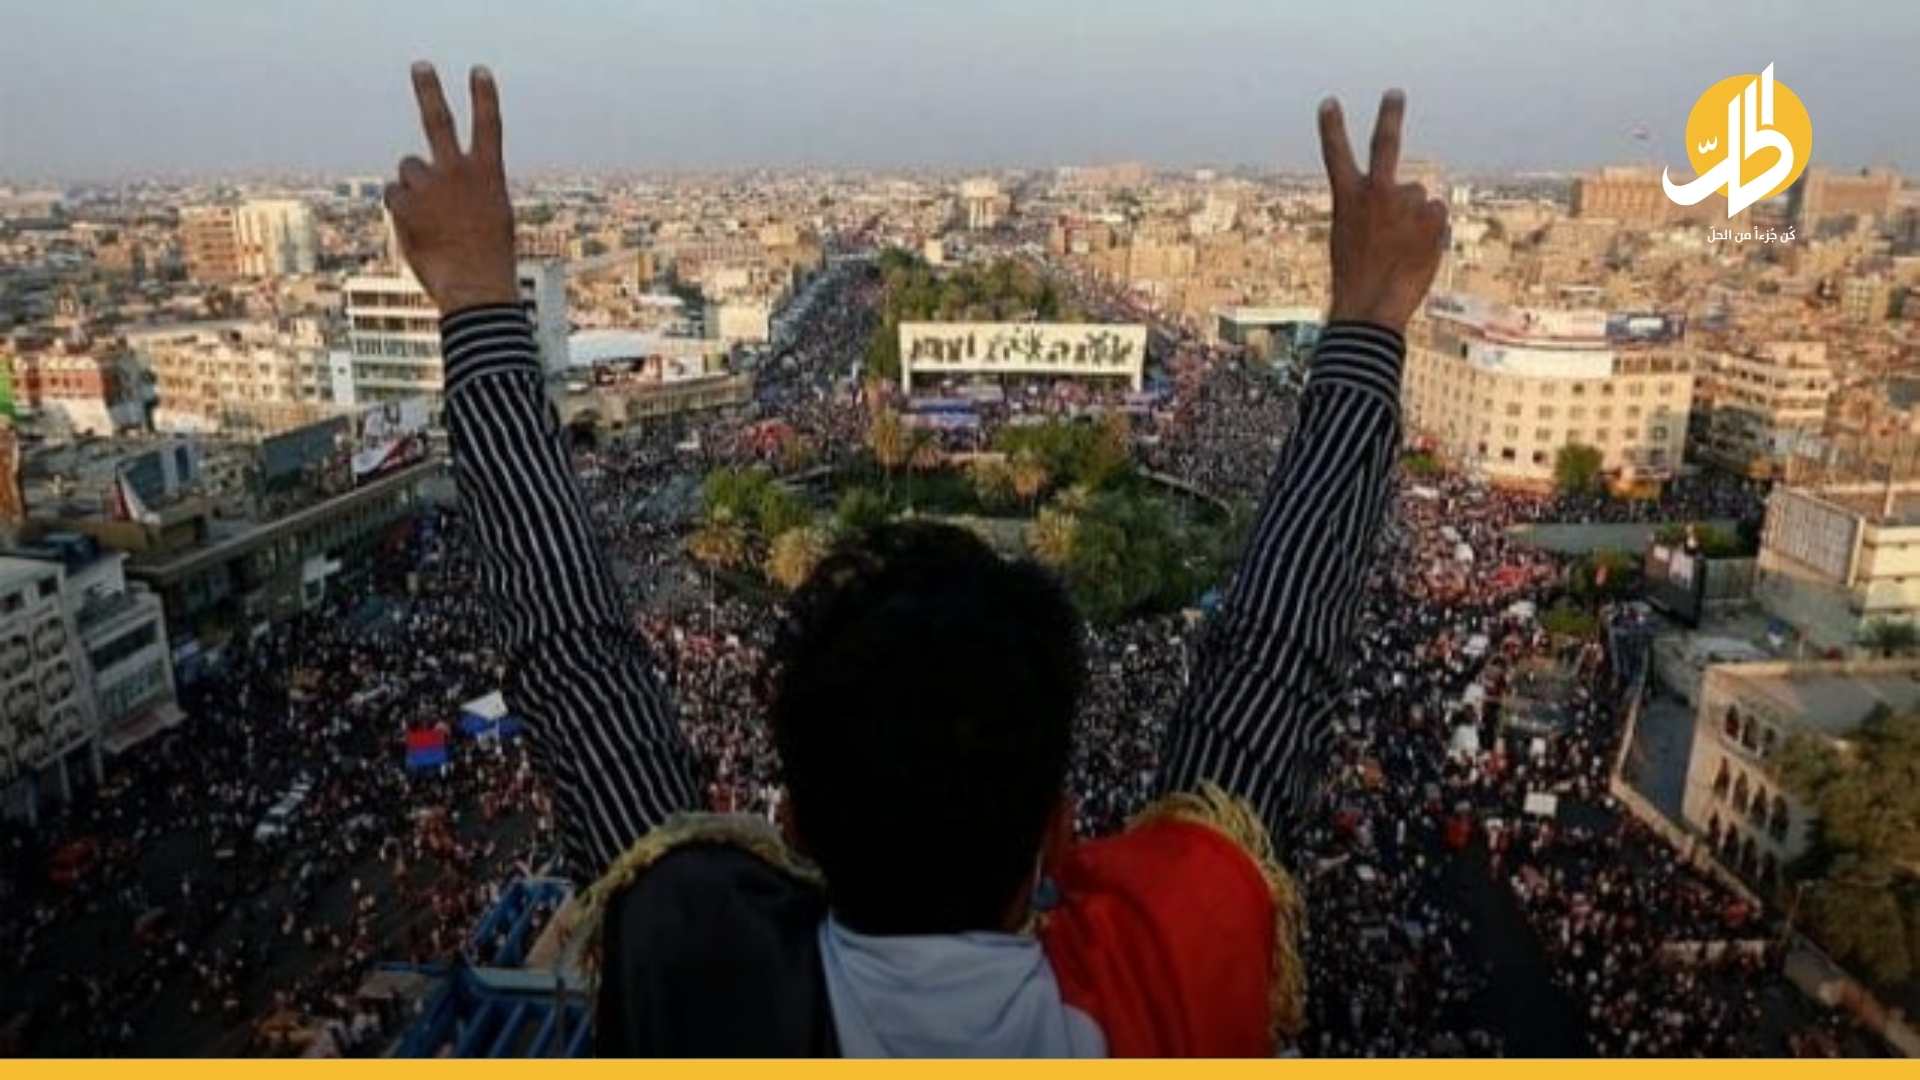 دعم سياسي لتظاهرات “25 مايو”.. اغتيال الوزني يُفجر “تشرين” جديدة